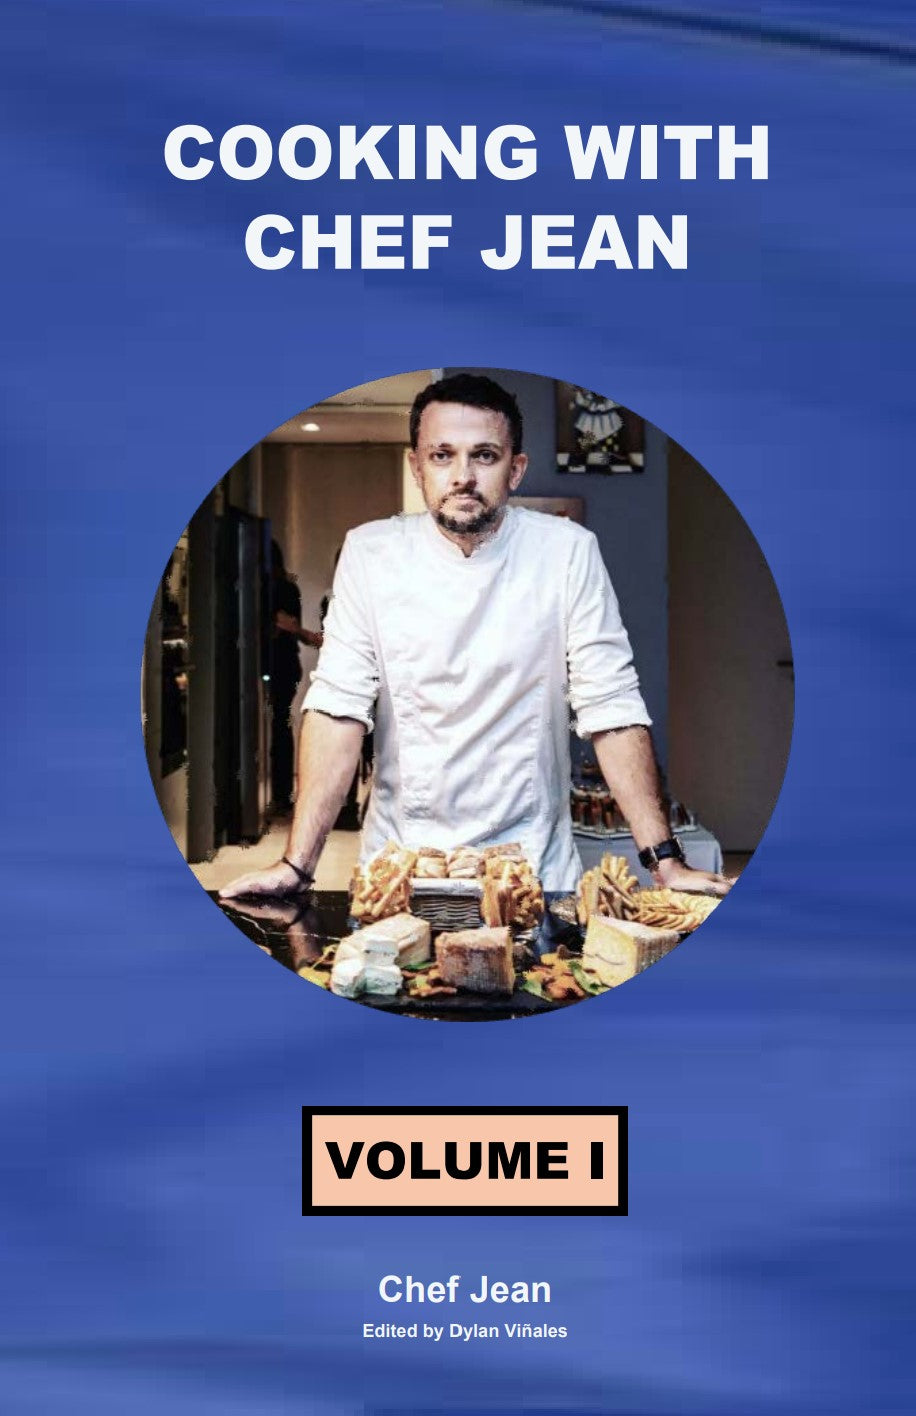 Chef Jean Books